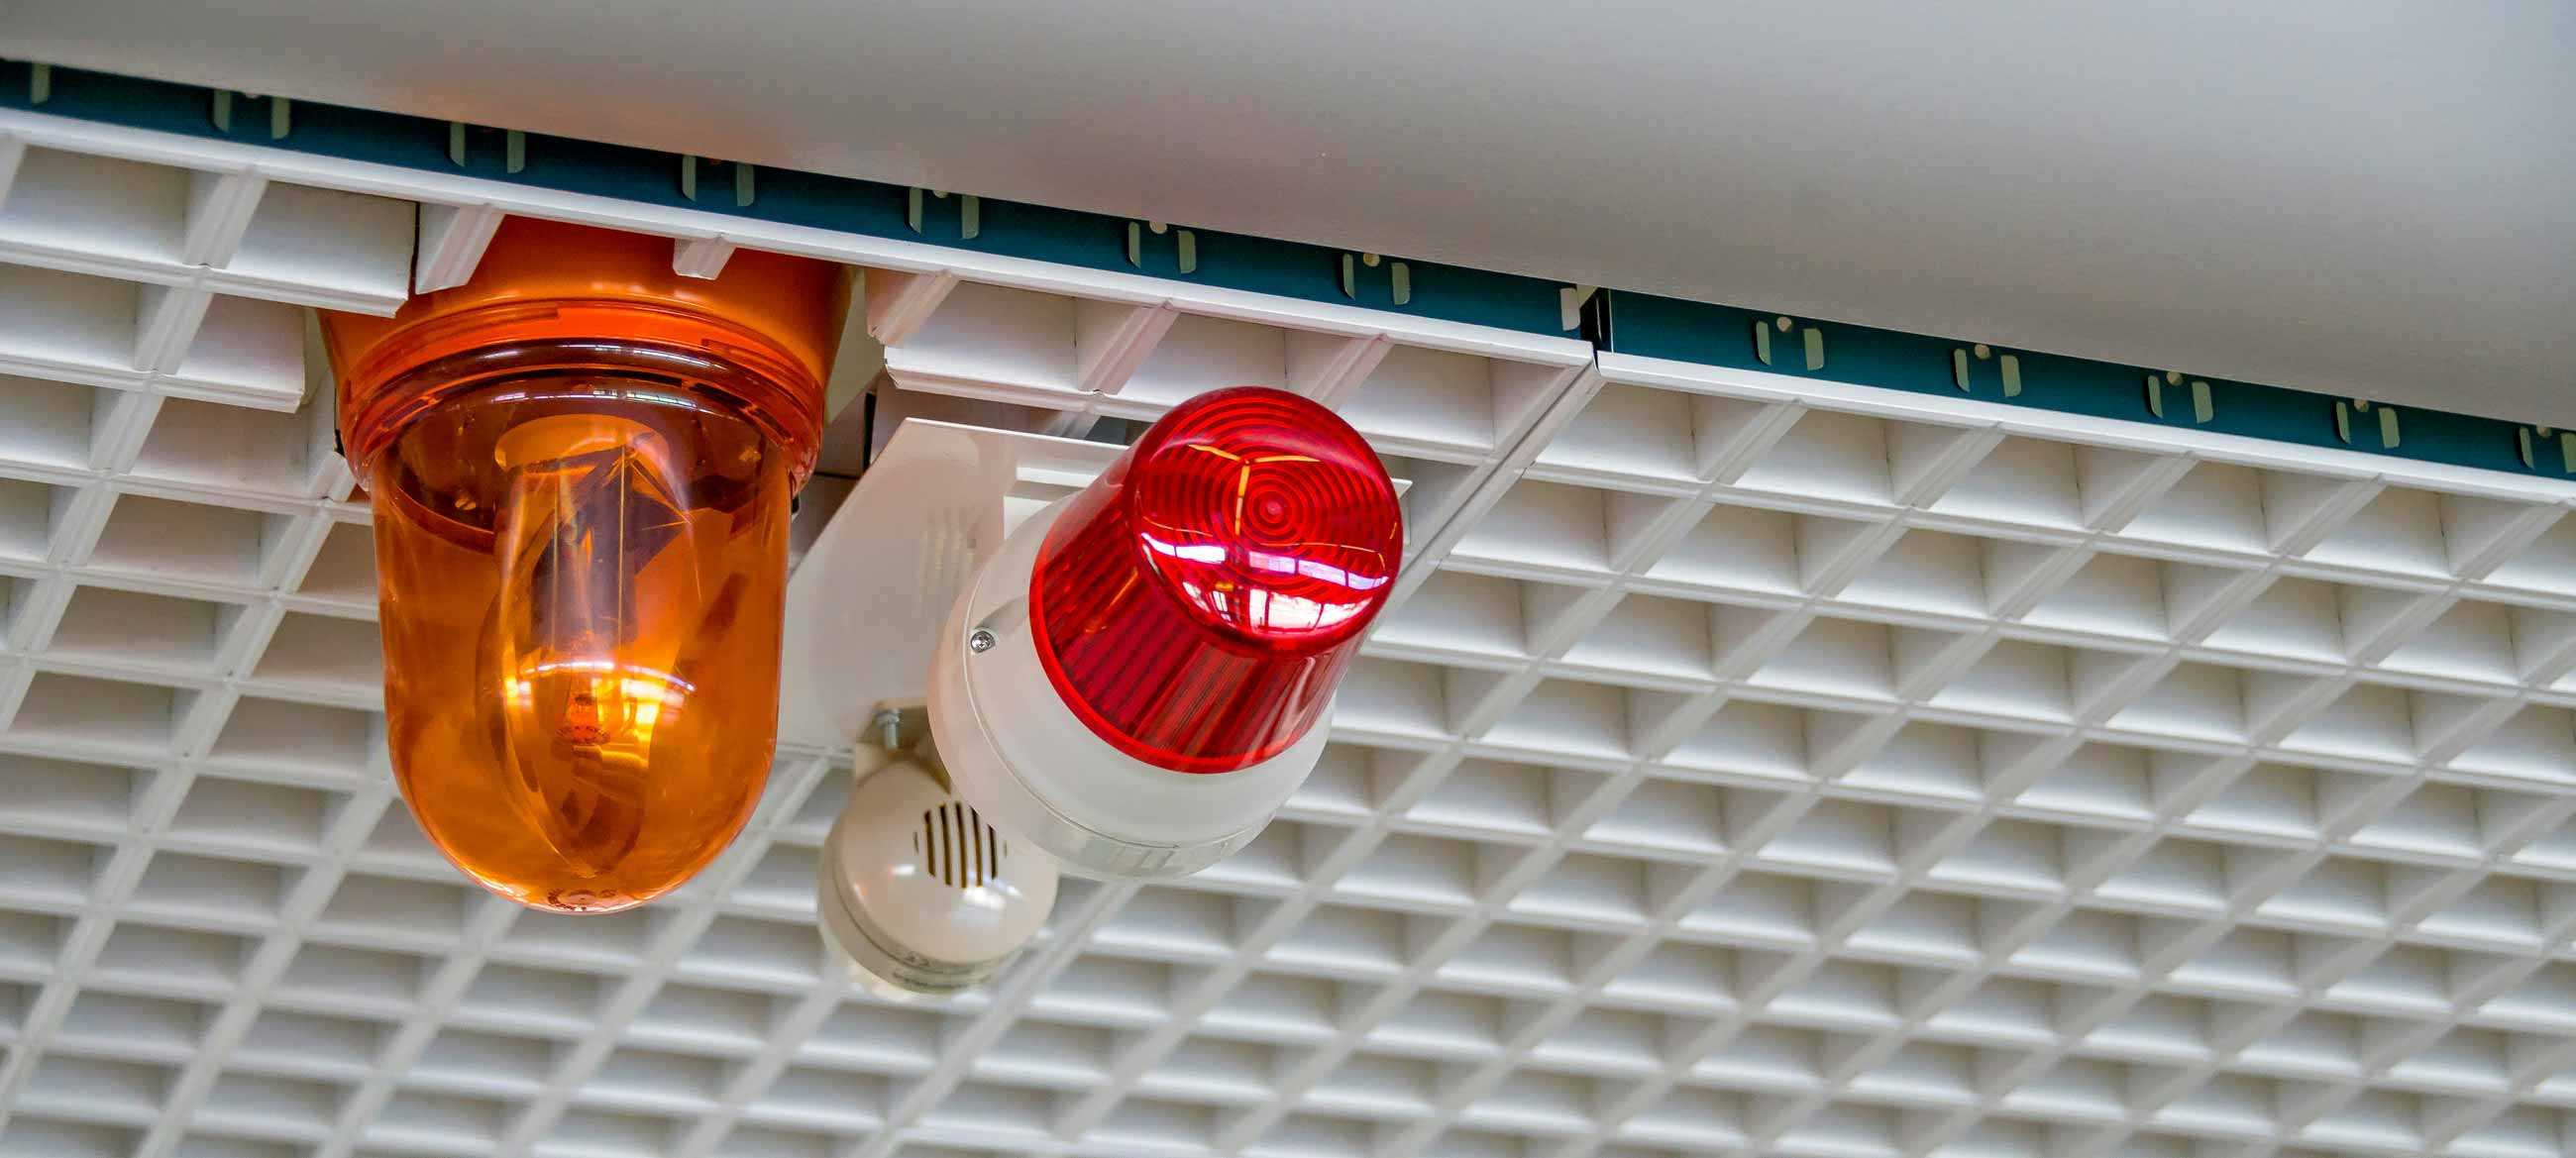 fire alarm system installations header image